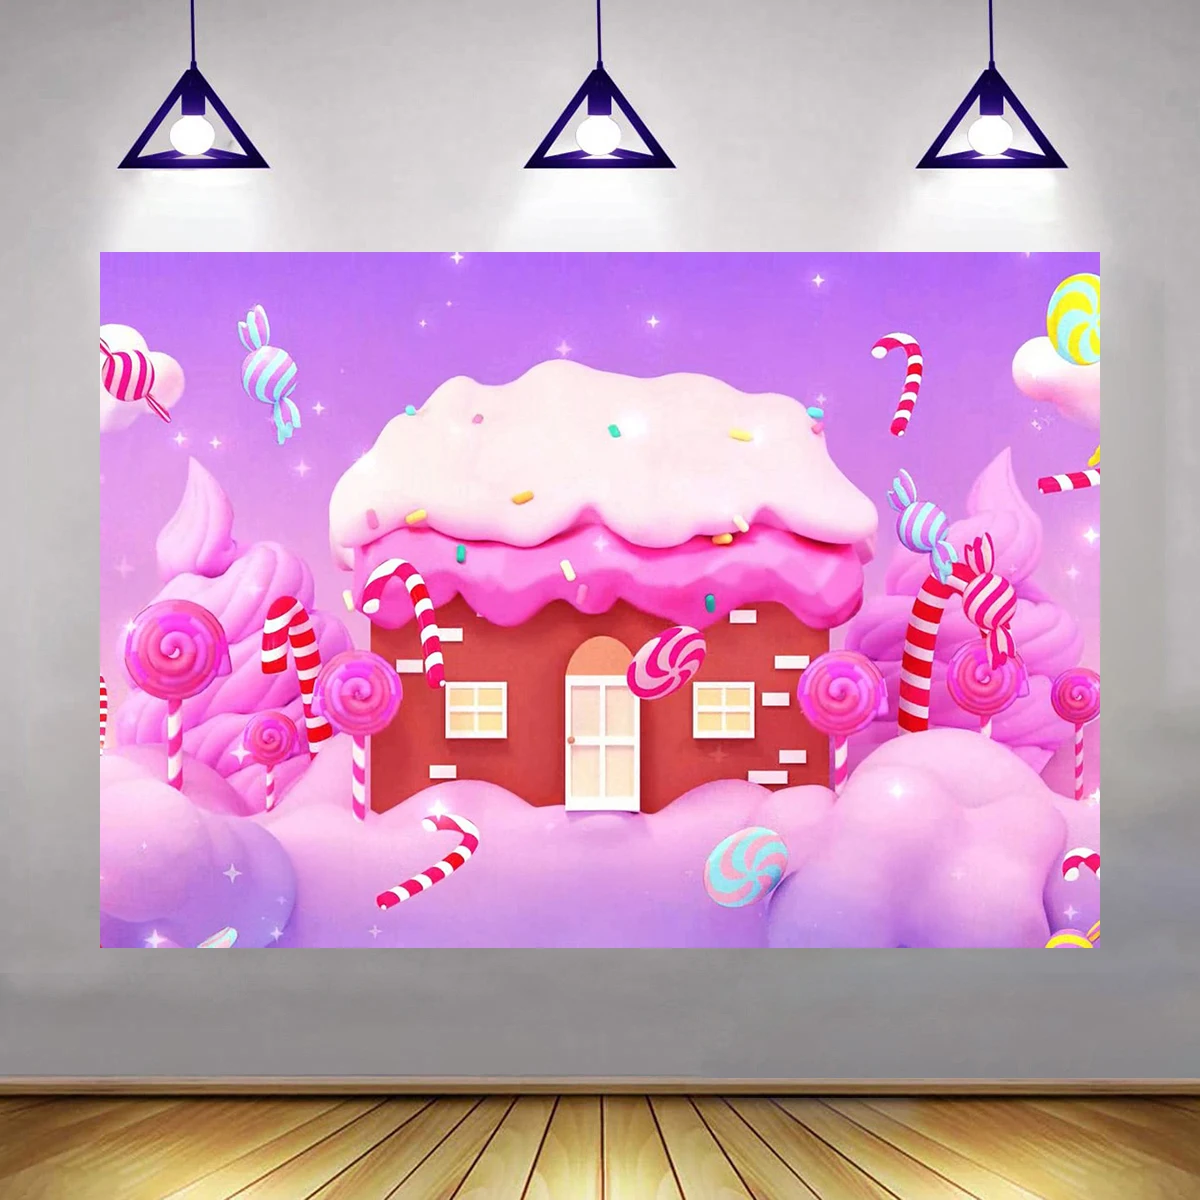 

10x6 футов тканевый фон для фотосъемки розовый дом конфеты леденцы сказочный мир принцесса Вечеринка в честь Дня Рождения